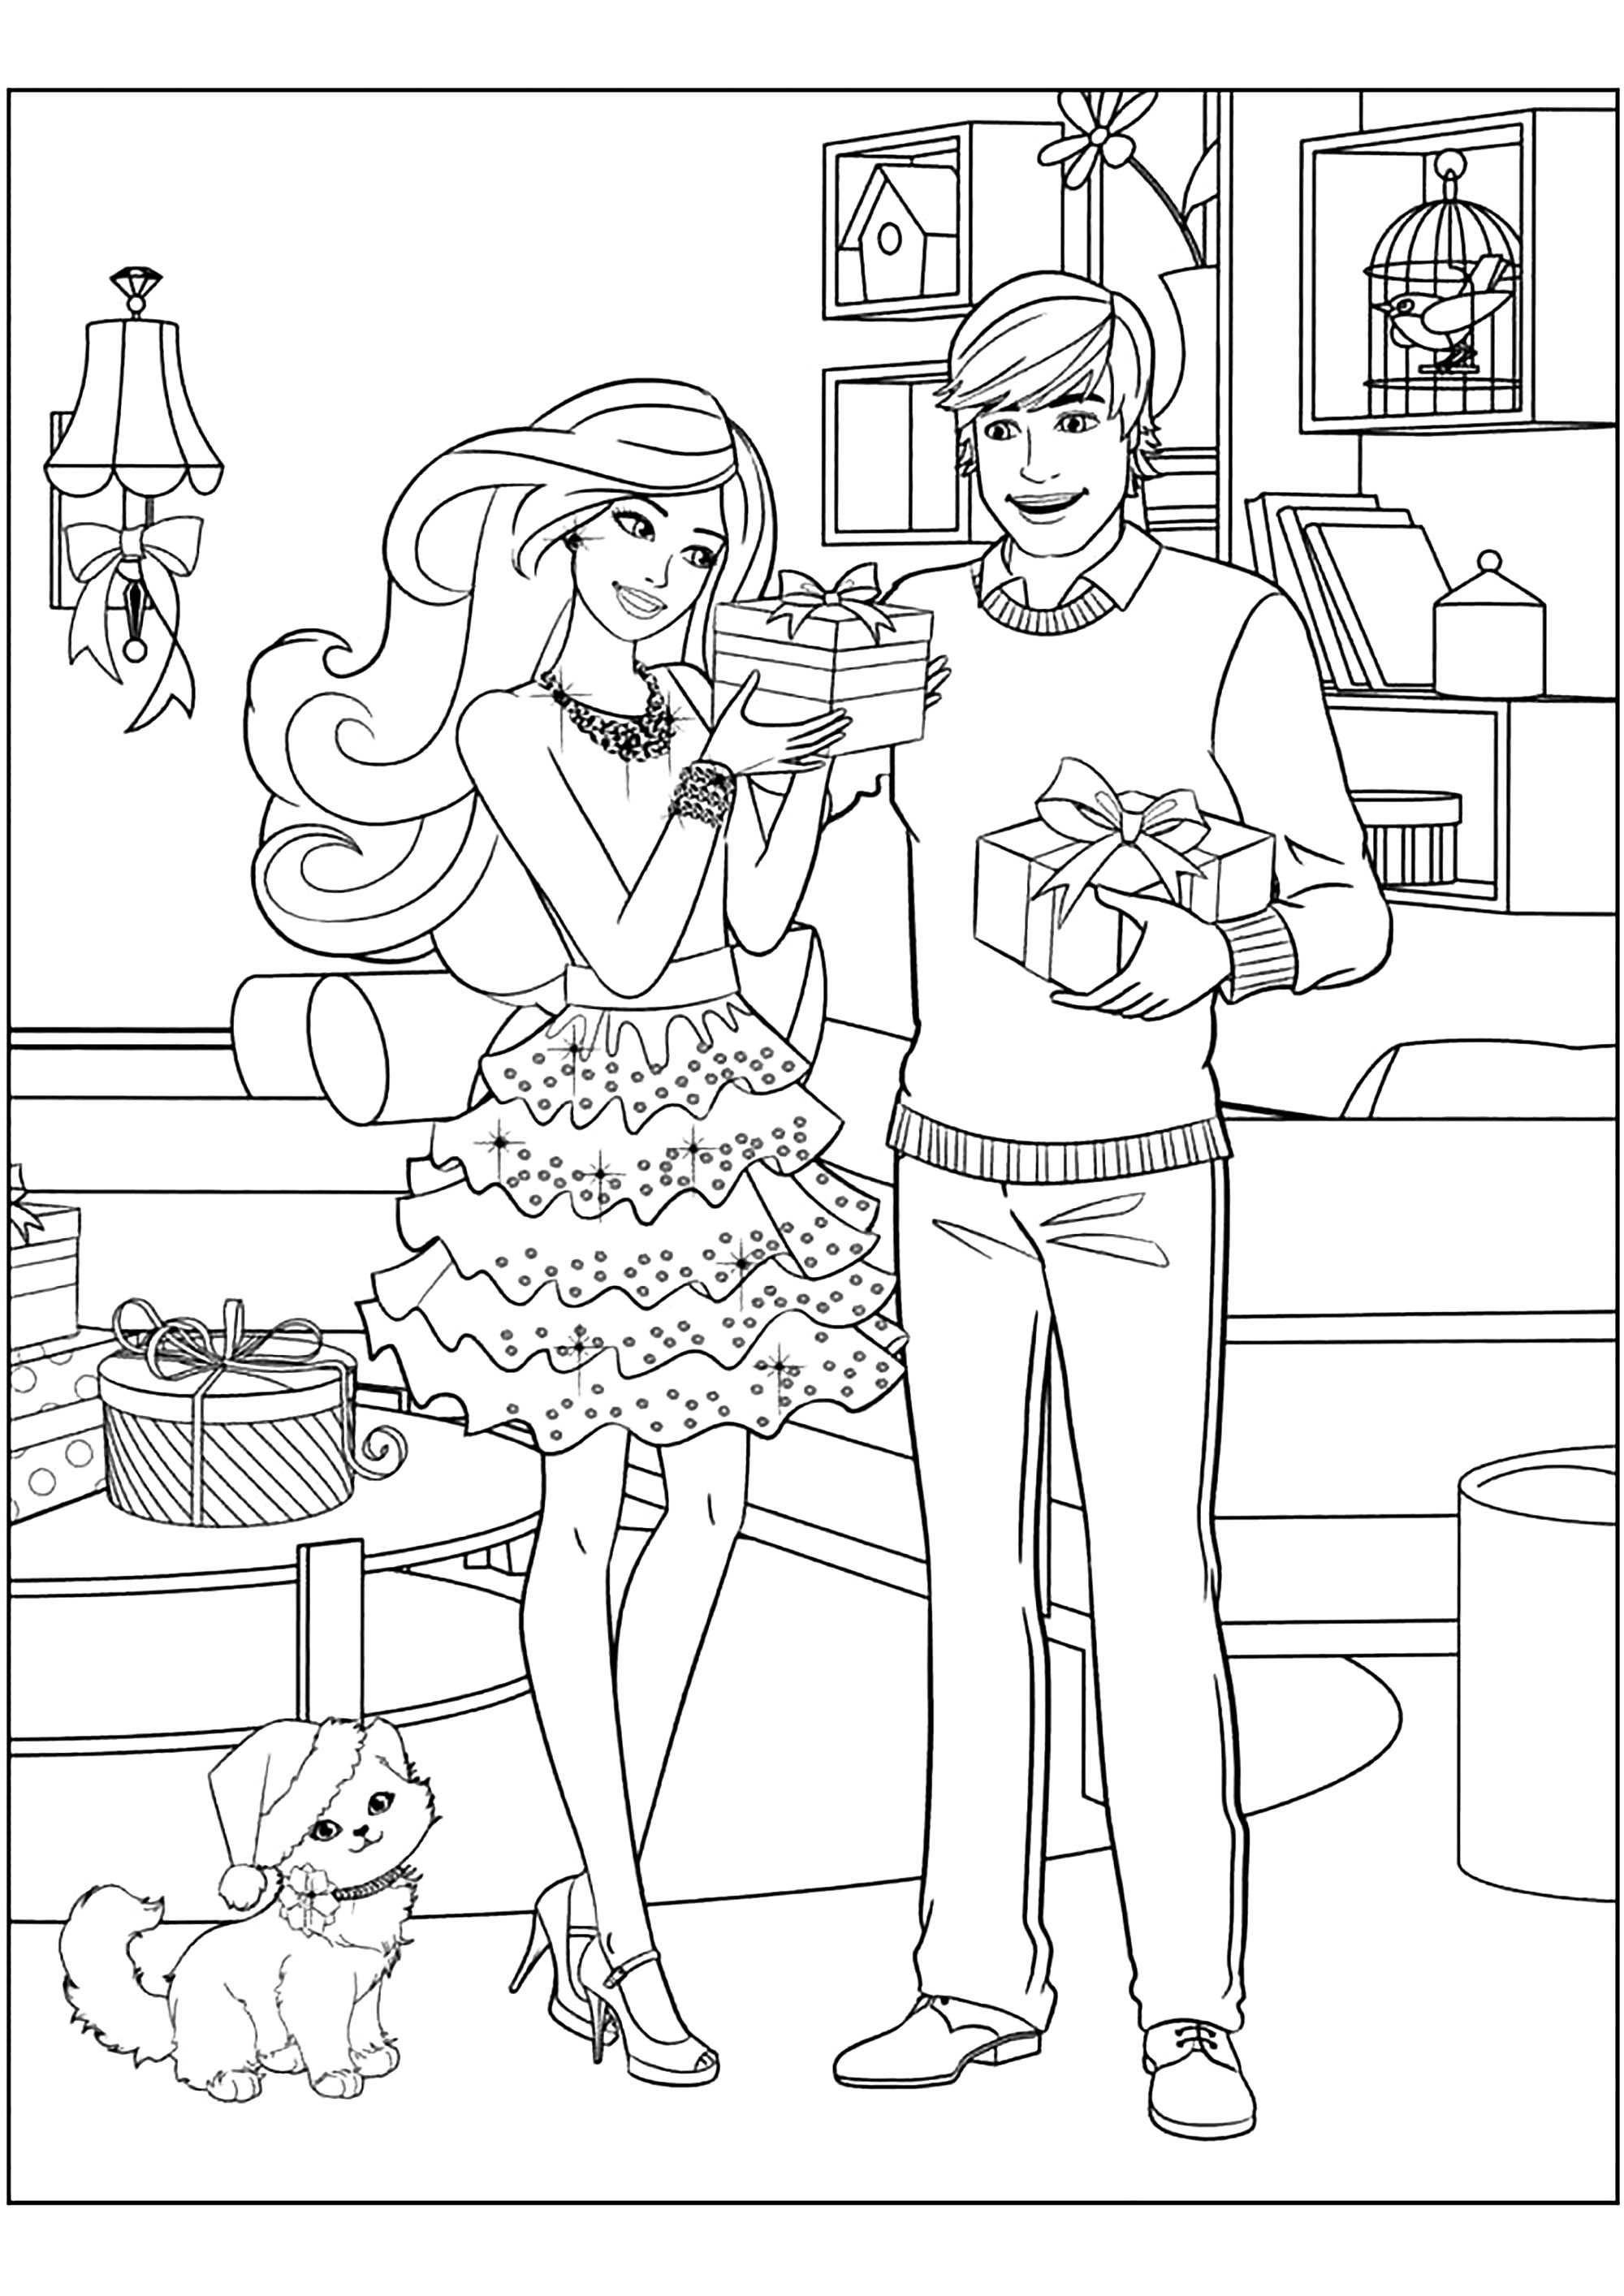 Ken et Barbie s'offrent des cadeaux. De nombreux détails à colorier dans ce joli coloriage avec Barbie et Ken